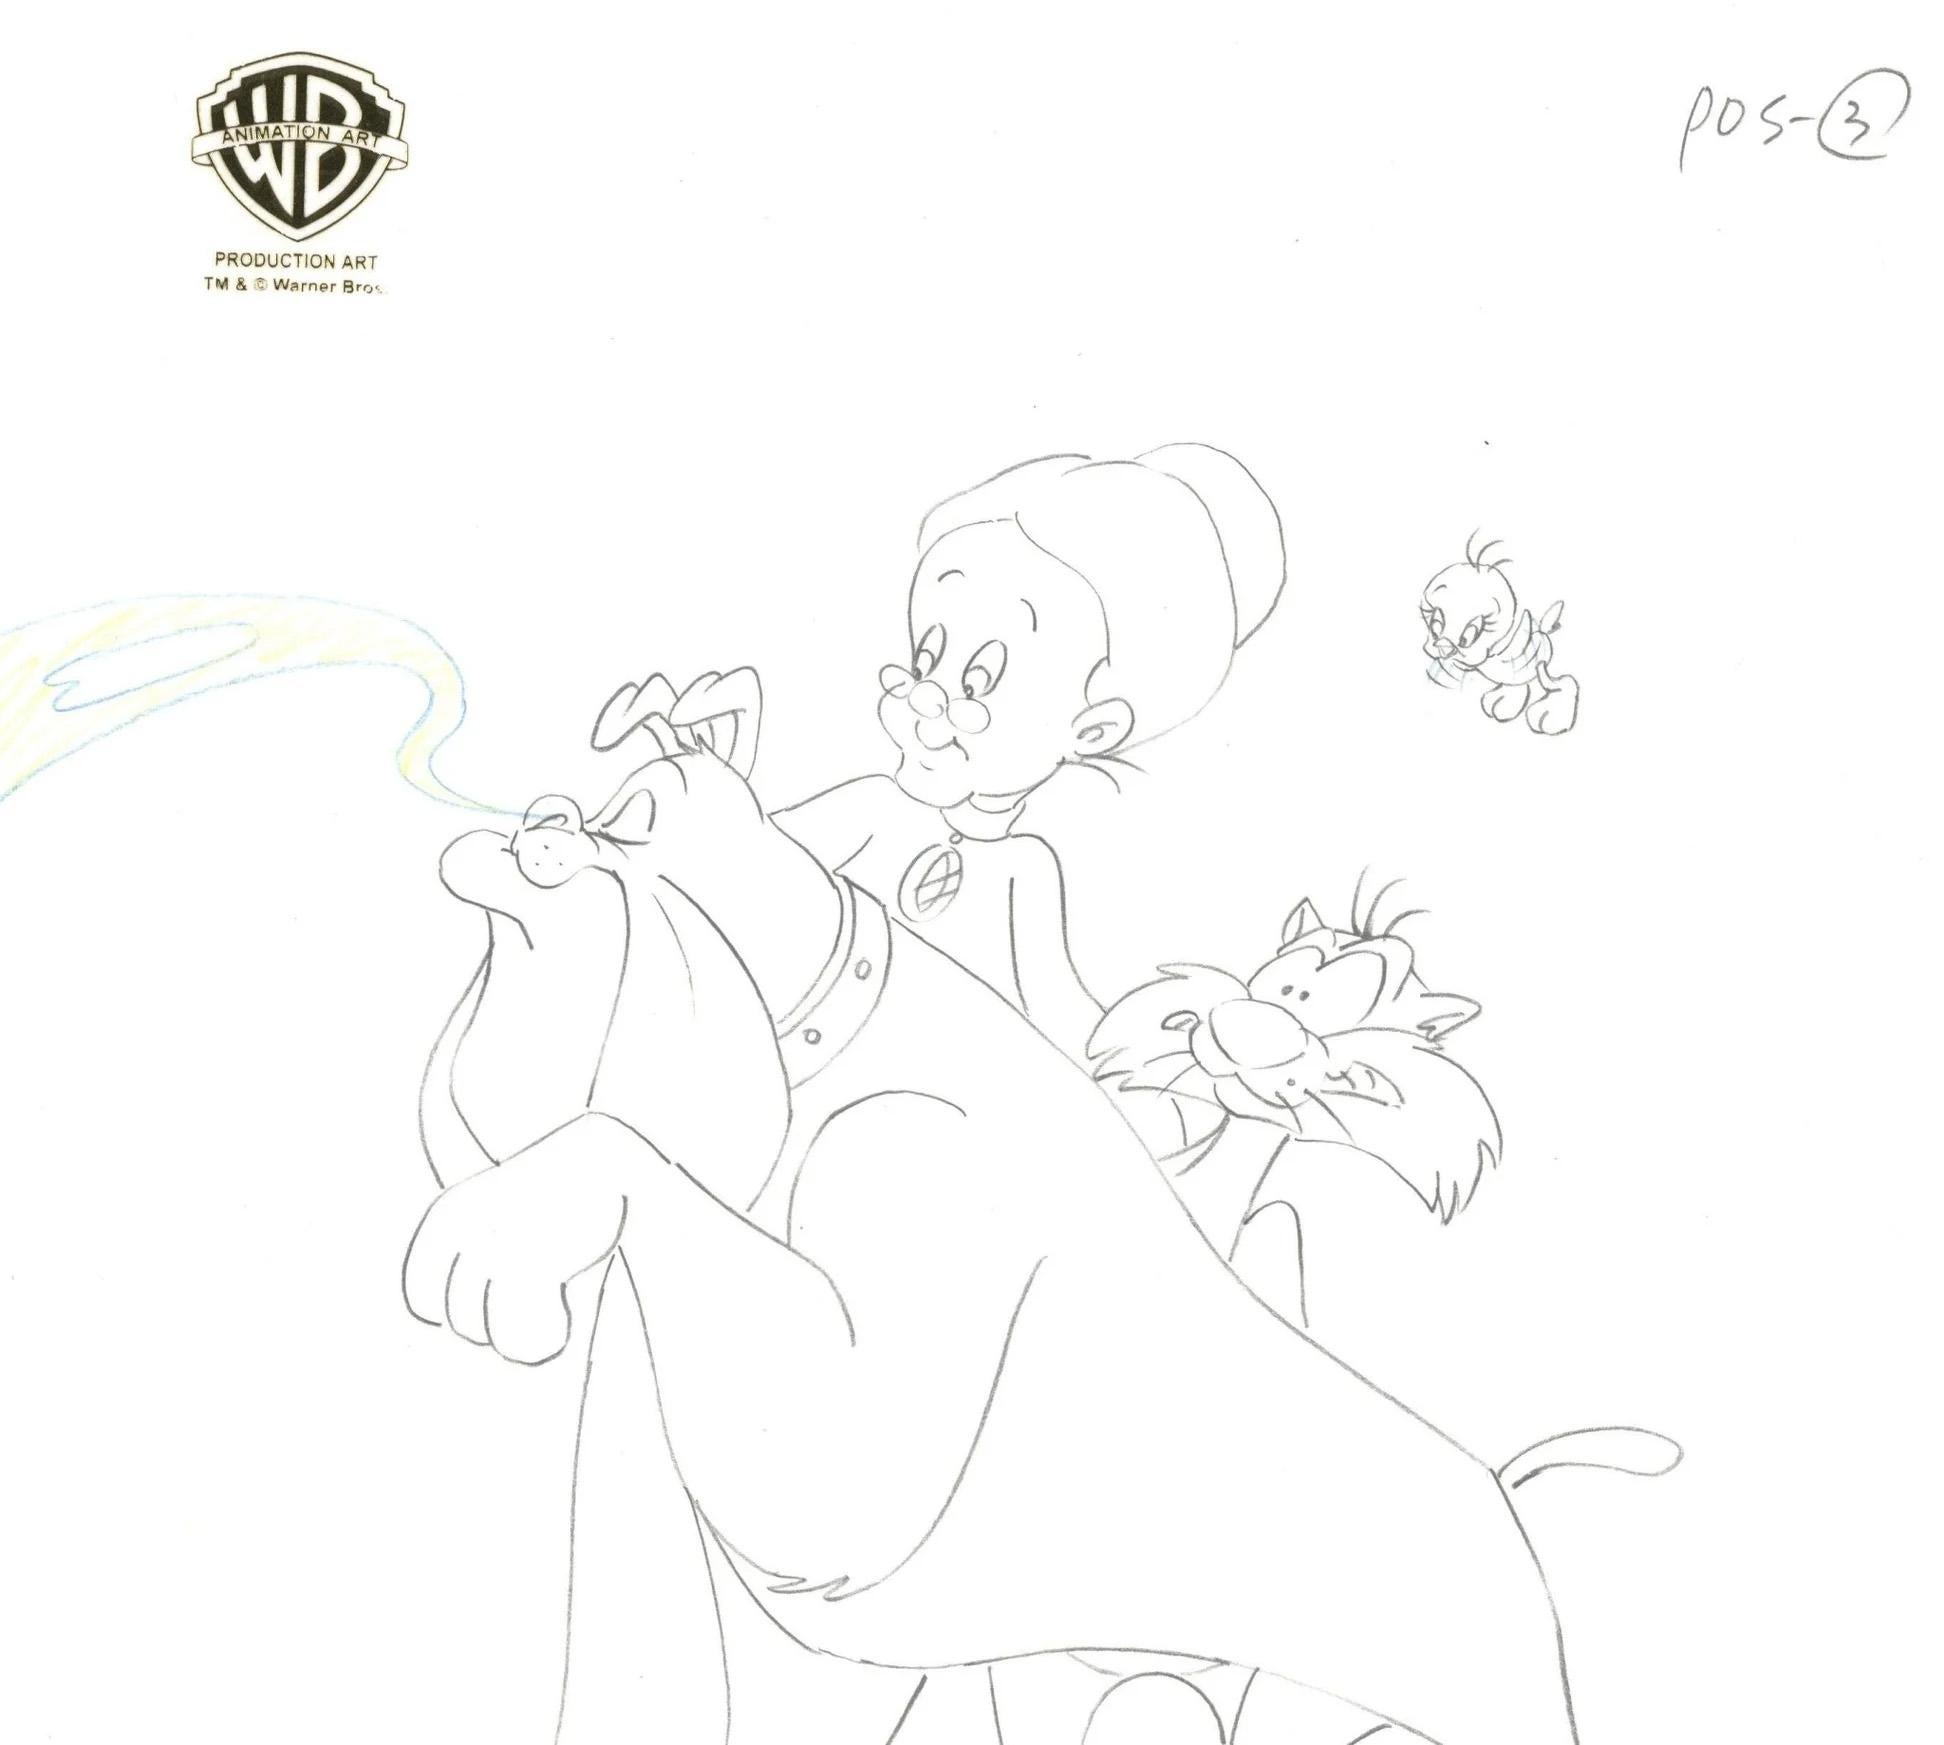 Sylvester & Tweety Mysteries Original Drawing: Tweety, Granny, Sylvester, Hector - Art by Warner Bros. Studio Artists